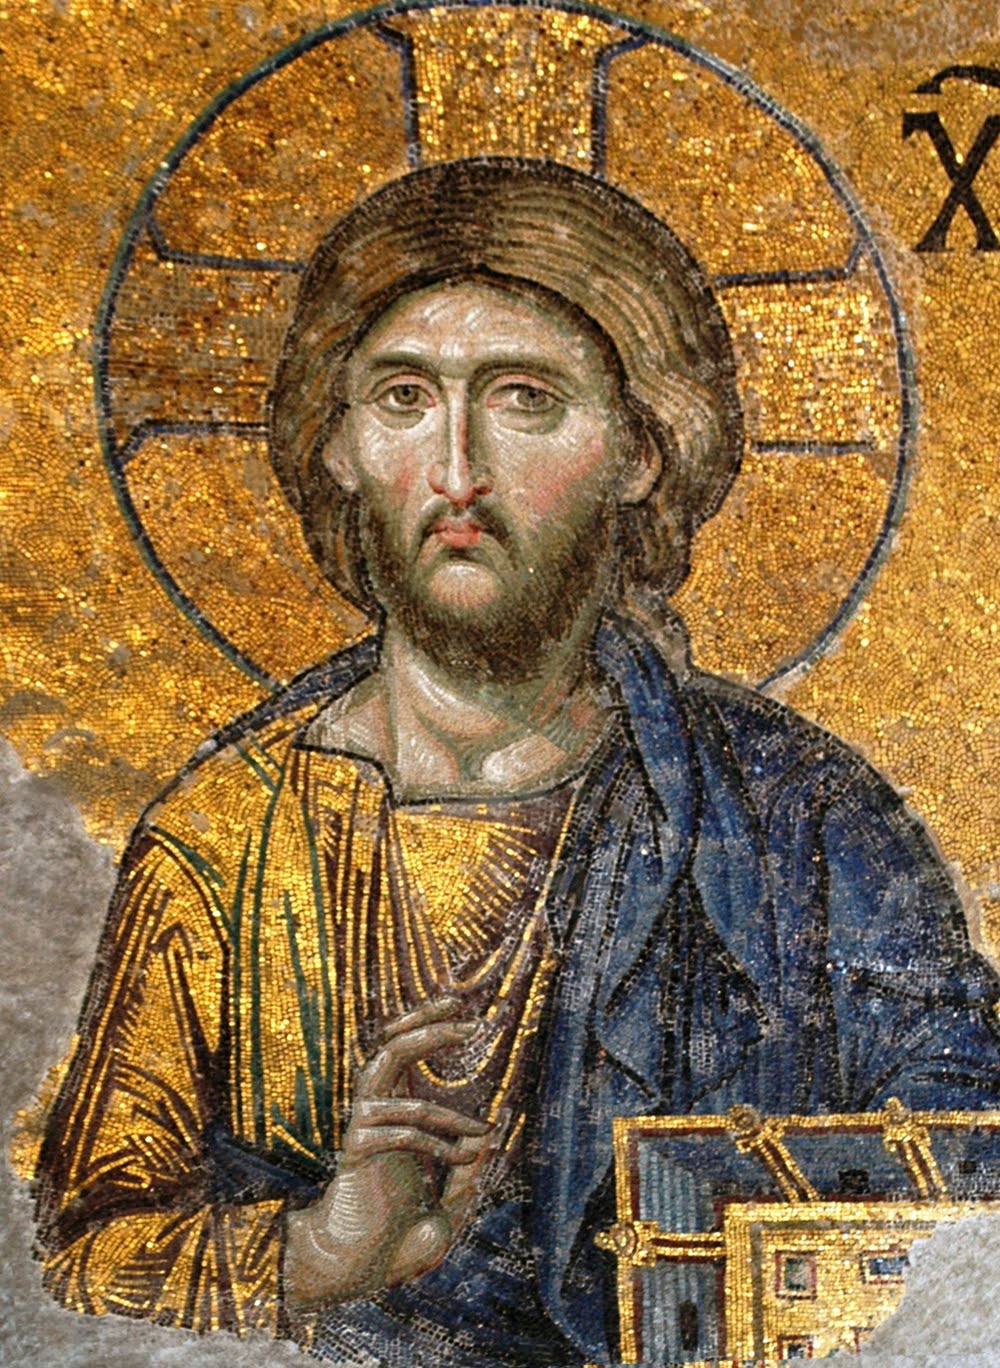 Господь Вседержитель. Мозаика храма св. Софии Константинопольской